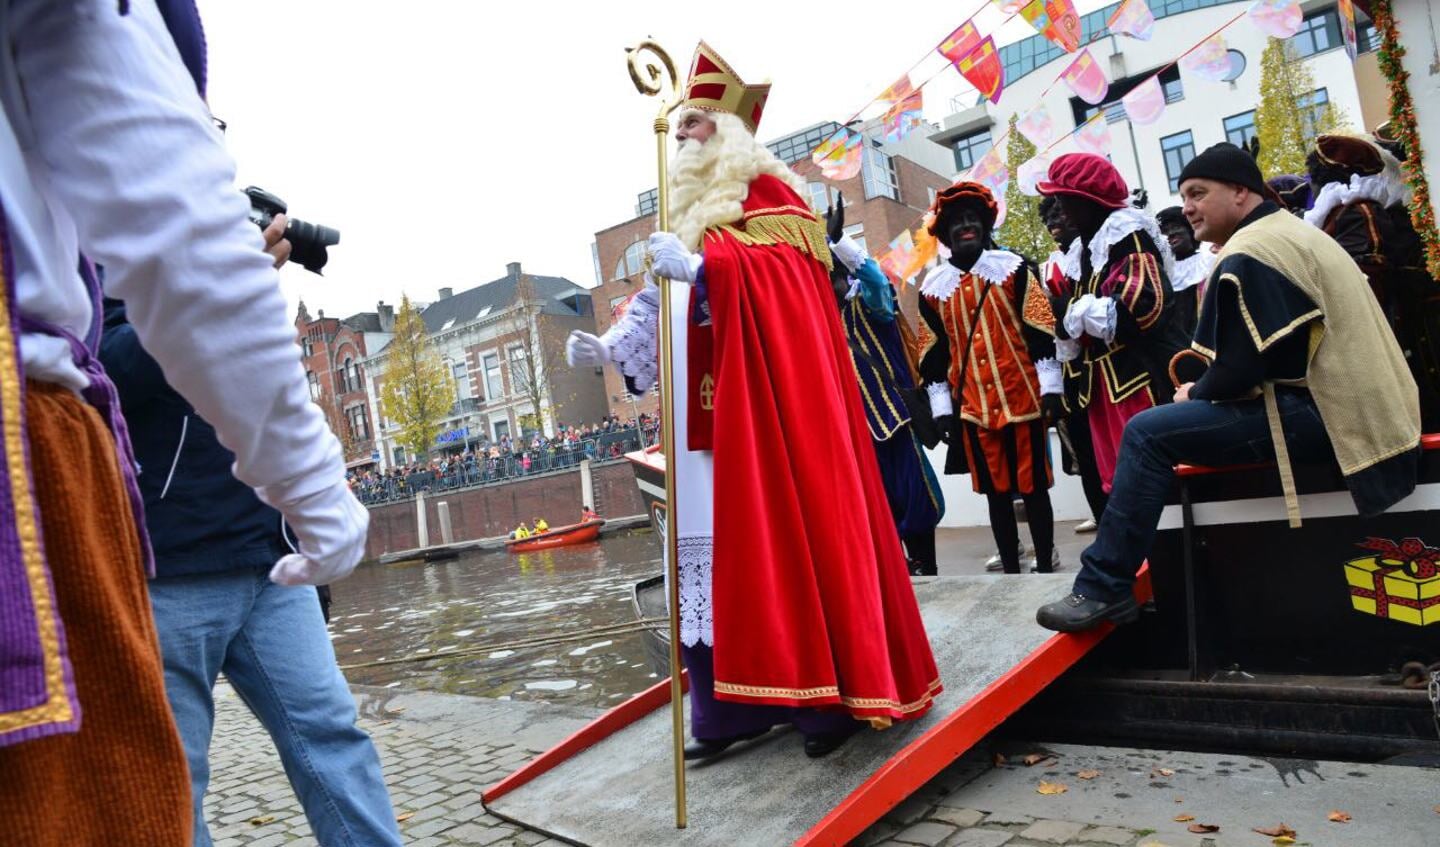 De intocht van Sinterklaas in het centrum van Breda.